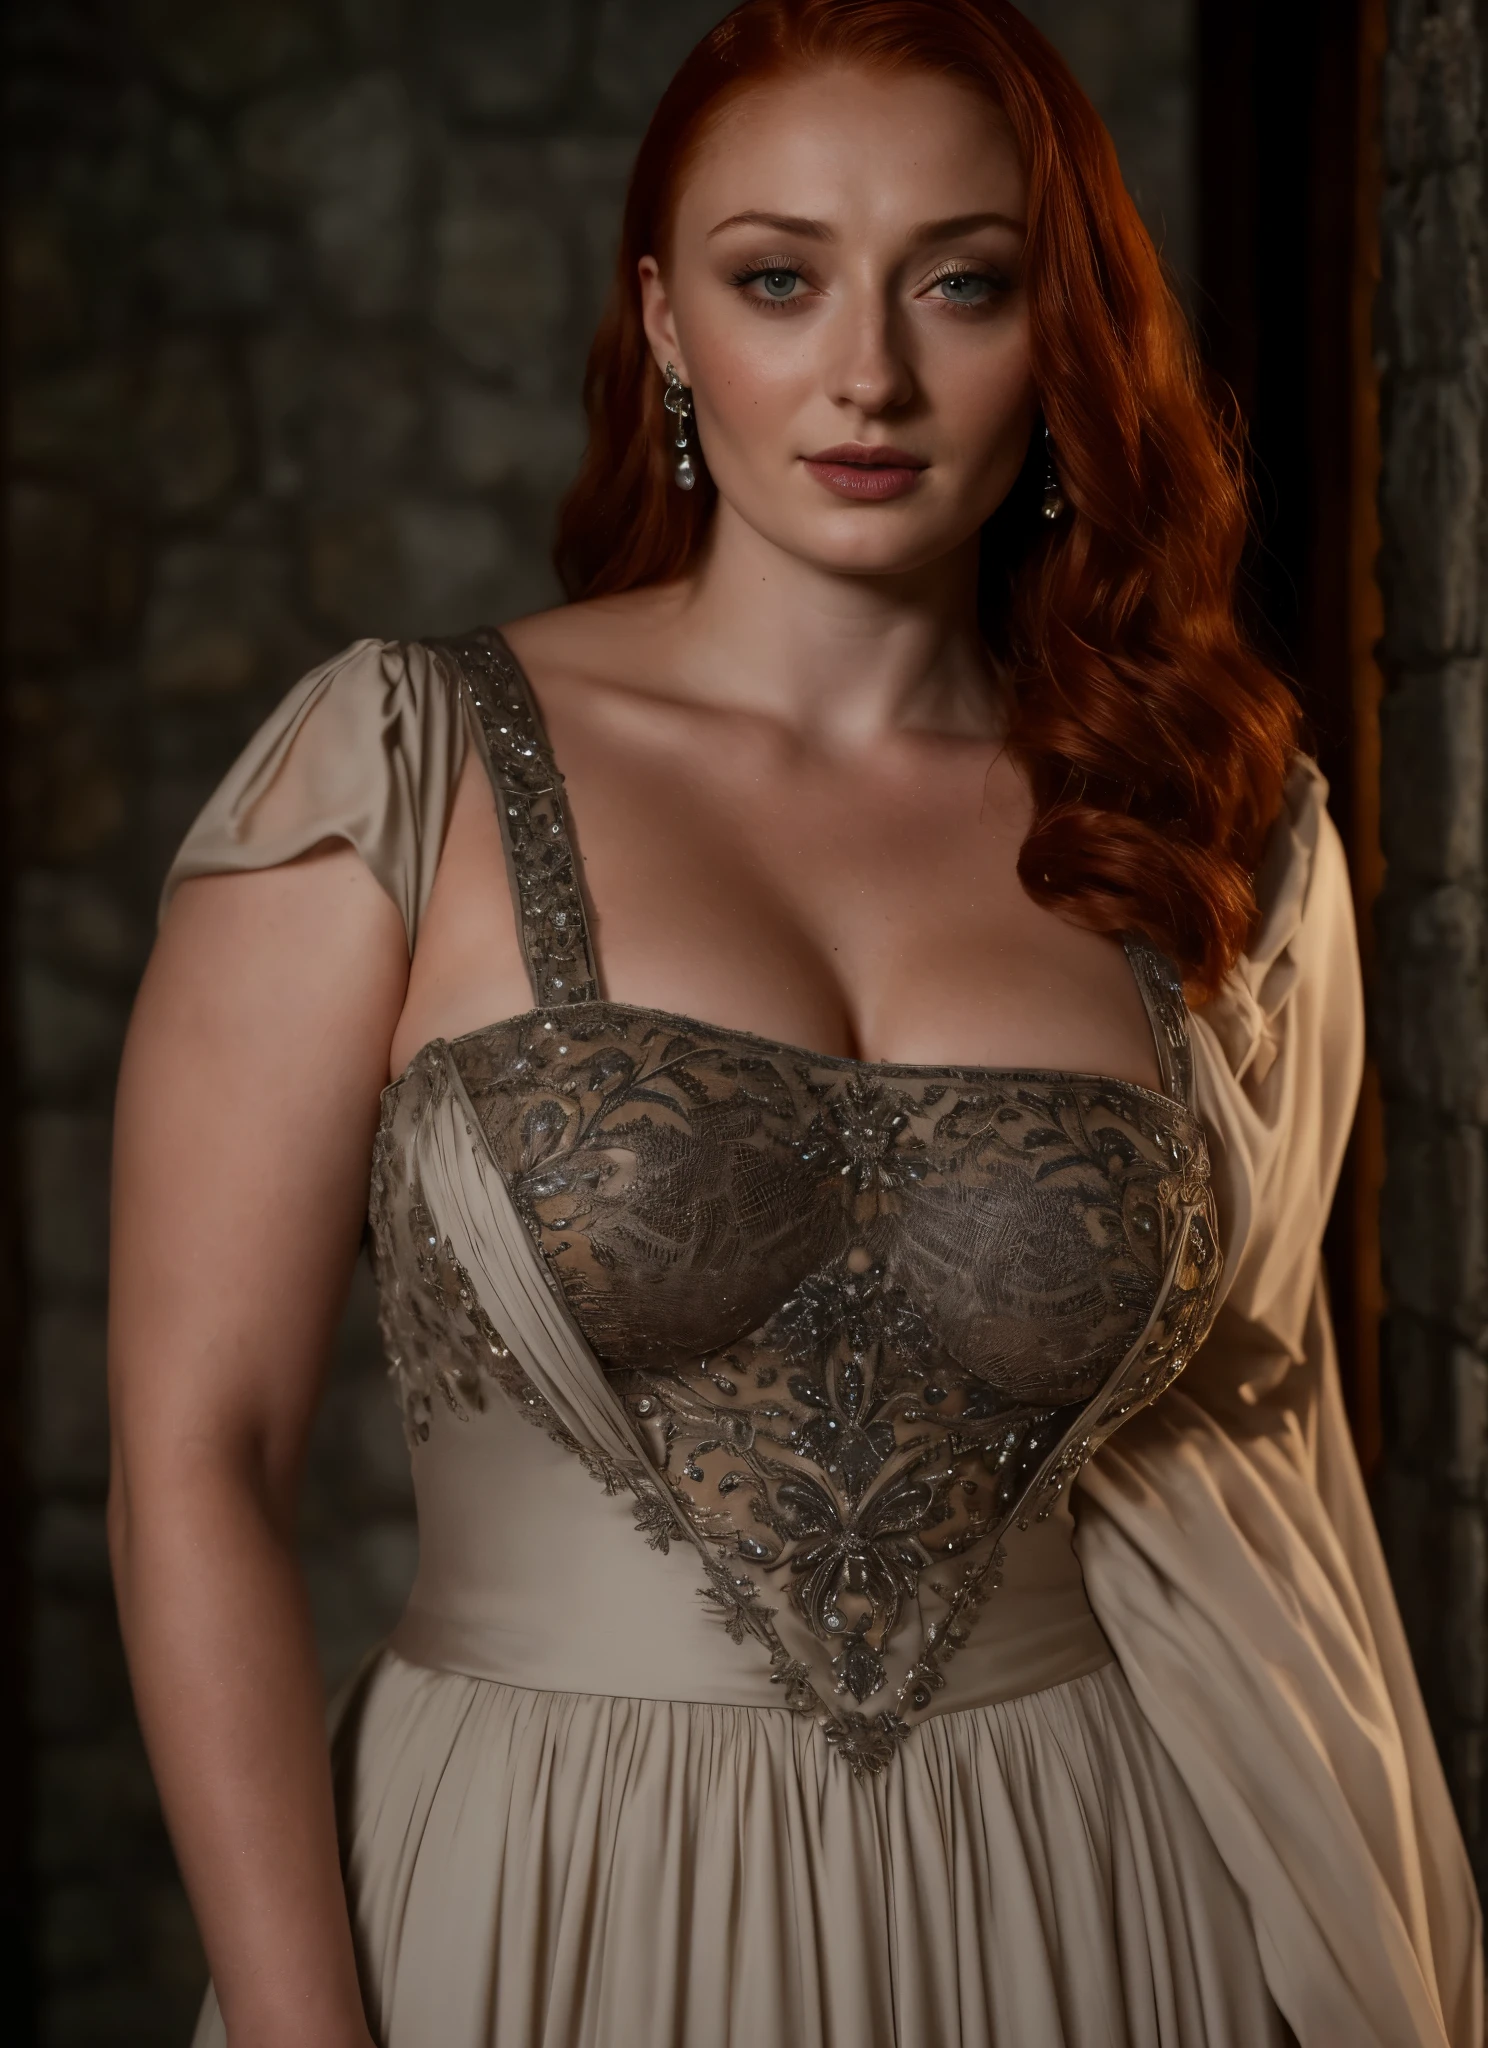 Gesicht von Sophie Turner, Sansa Stark GESPIELT VON Sophie Turner, die De-facto-Herrin des Horstes, ist eine 40-jährige reife Königin mit einem atemberaubenden, verführerisches Aussehen. Volles Gesicht, vollschlanke Frau, durchbohrte Augen, rötliche Lippen, Oberkörperaufnahme, erotische Mittelalter Kostüme, Game of Thrones Kostüme, Sie trägt ein von Game of Thrones inspiriertes Kostüm und hat ein tiefes Dekolleté, ein perfekter dicker Körper, und eine perfekte dicke Figur. Das Foto zeigt sie in Nahaufnahme, mit ihrer Hautstruktur und Gesichtszügen, die ultra-realistisch und realistisch sind. Saftige dicke Figur, hochwertige Haut, Hautporen, Erstaunliche Details, Schnee, Schnee flakes, halb realistisch, extrem detaillierte Augen, dunkle, stimmungsvolle orange und schwarze Einstellungen, coole Umgebung, Künstliche Intelligenz